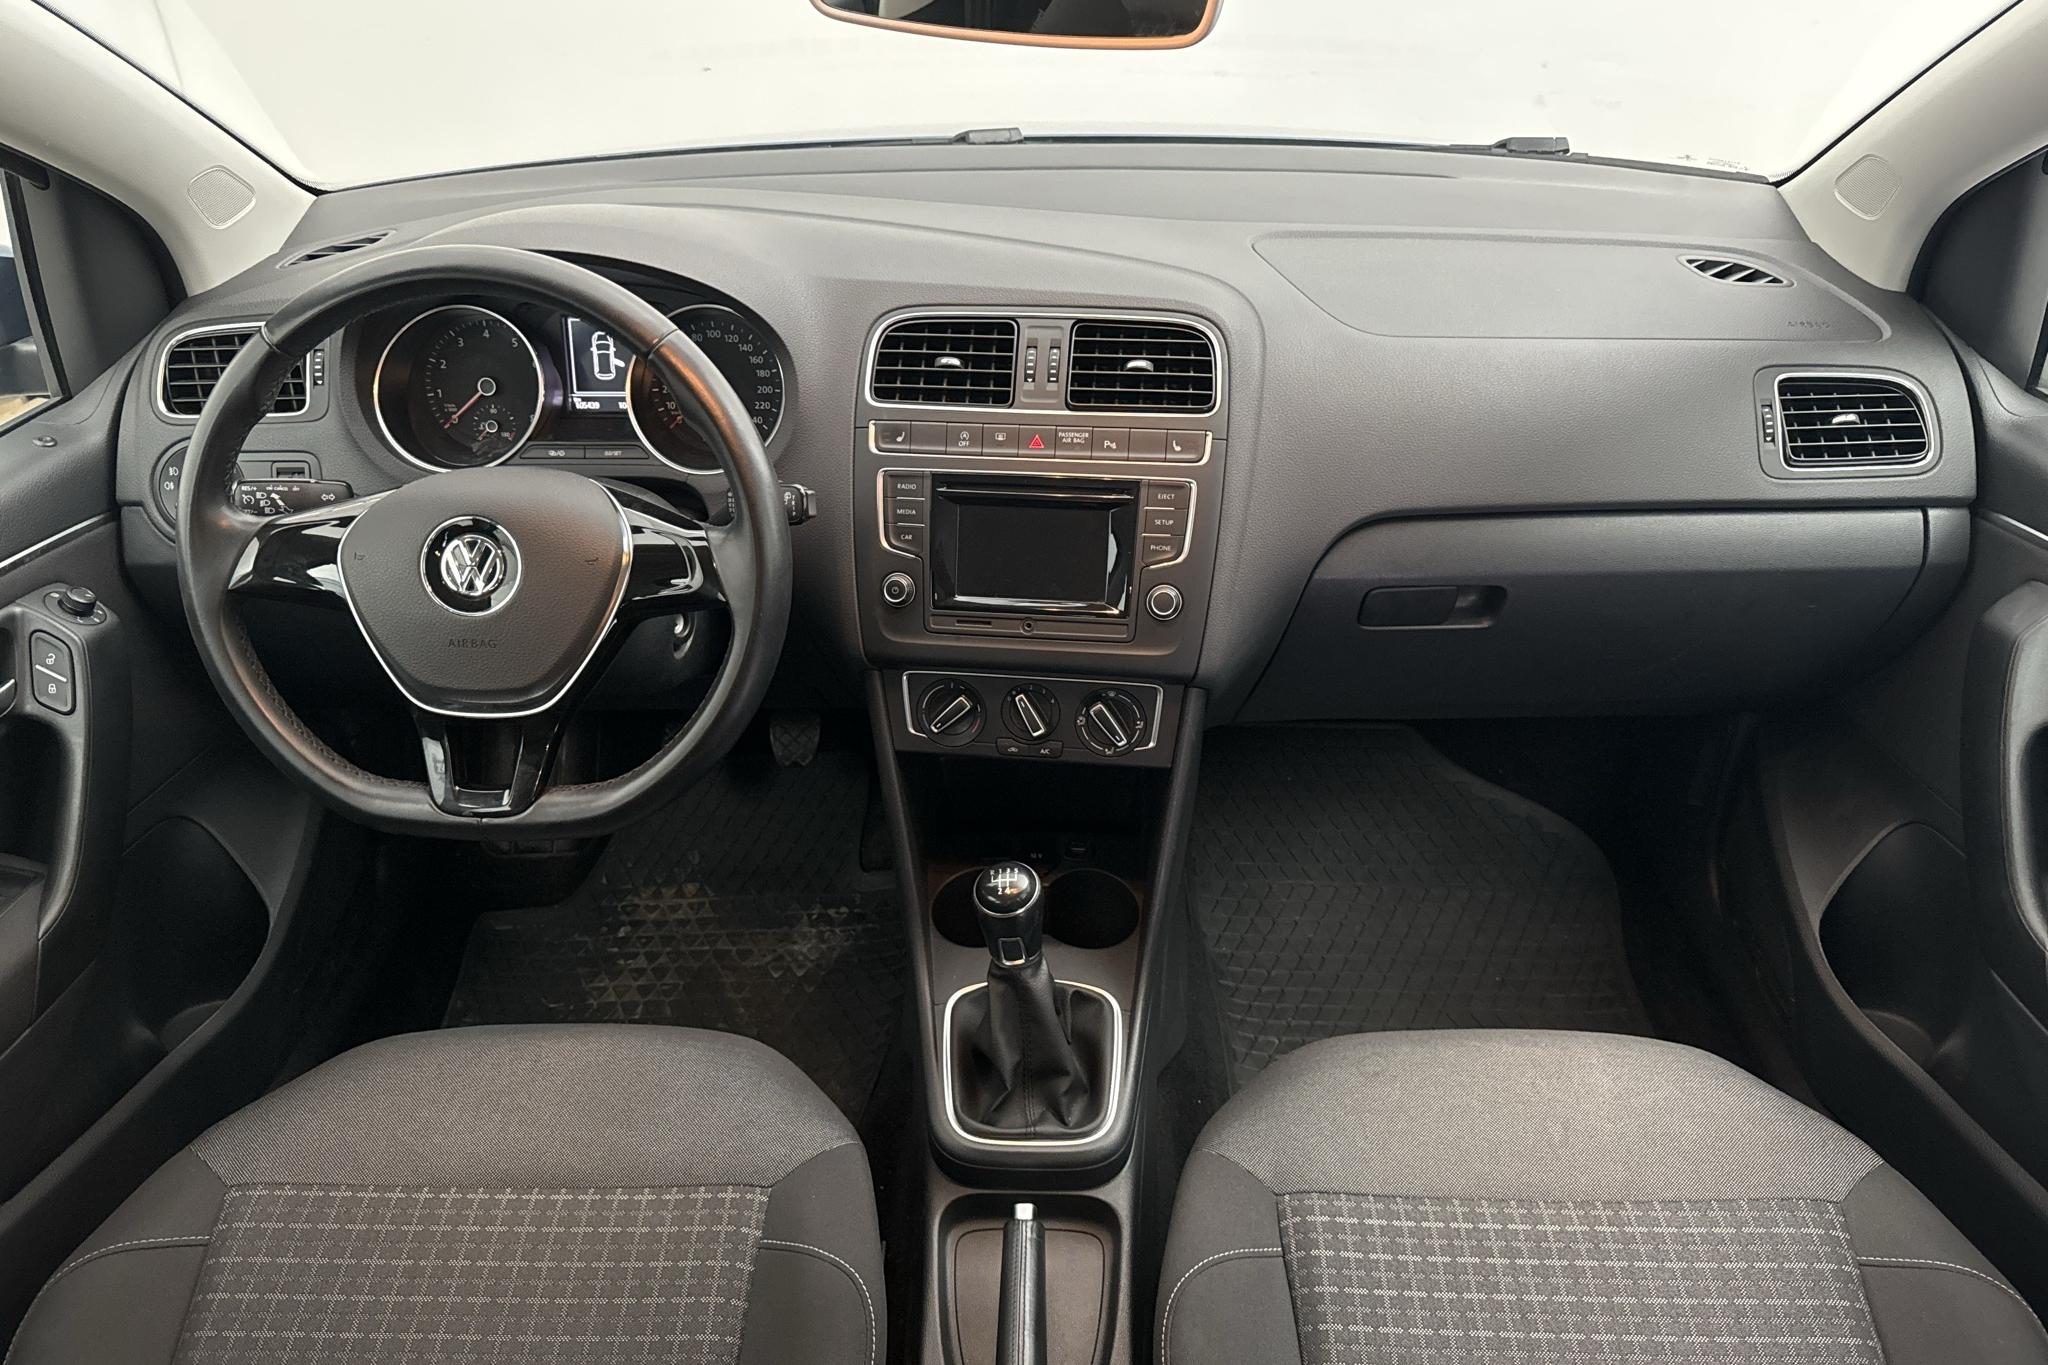 VW Polo 1.2 TSI 5dr (90hk) - 10 544 mil - Manuell - blå - 2015